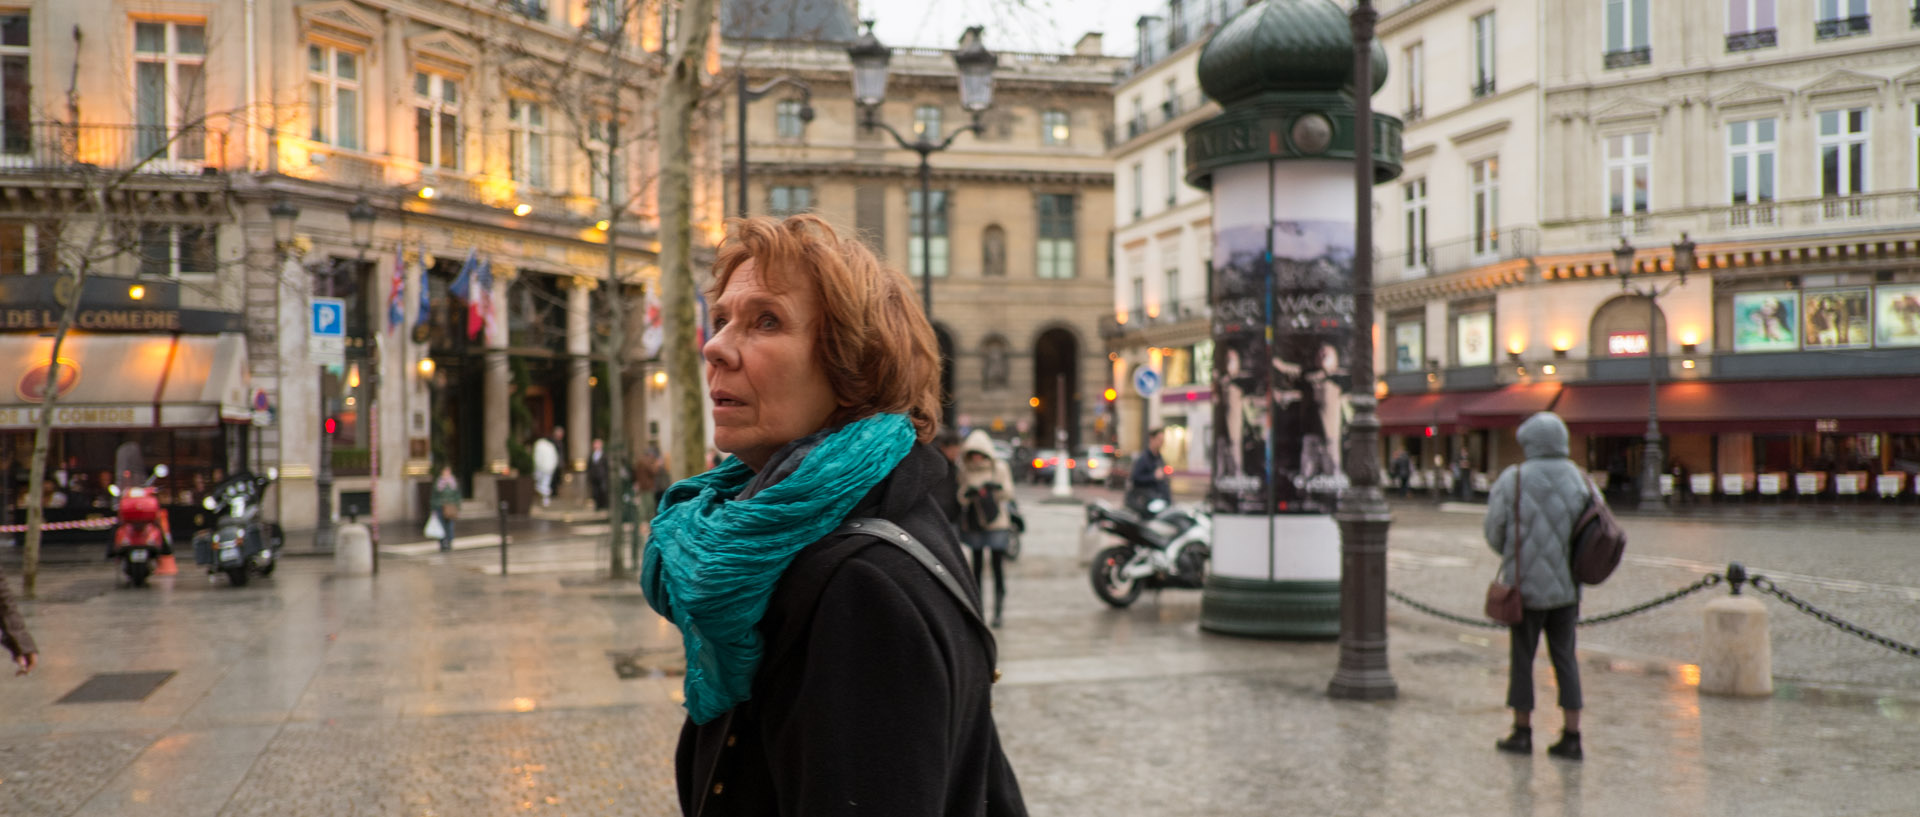 Femme regardant vers la Comédie française, rue Saint-Honoré, à Paris.